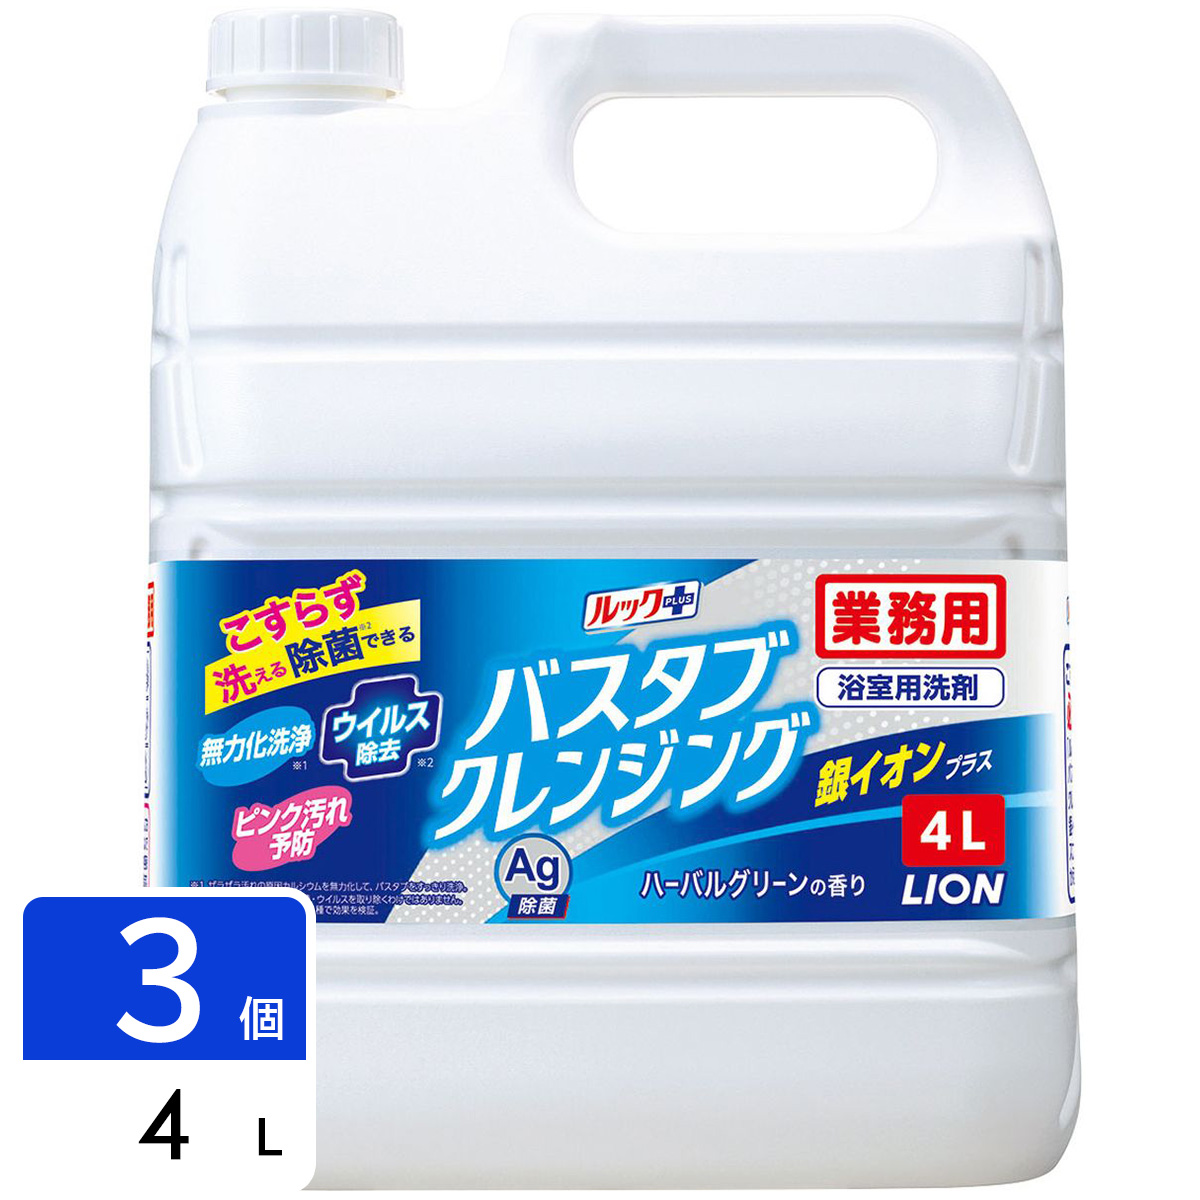 バスタブクレンジング 銀イオンプラス おふろ用洗剤 業務用 4L×3個